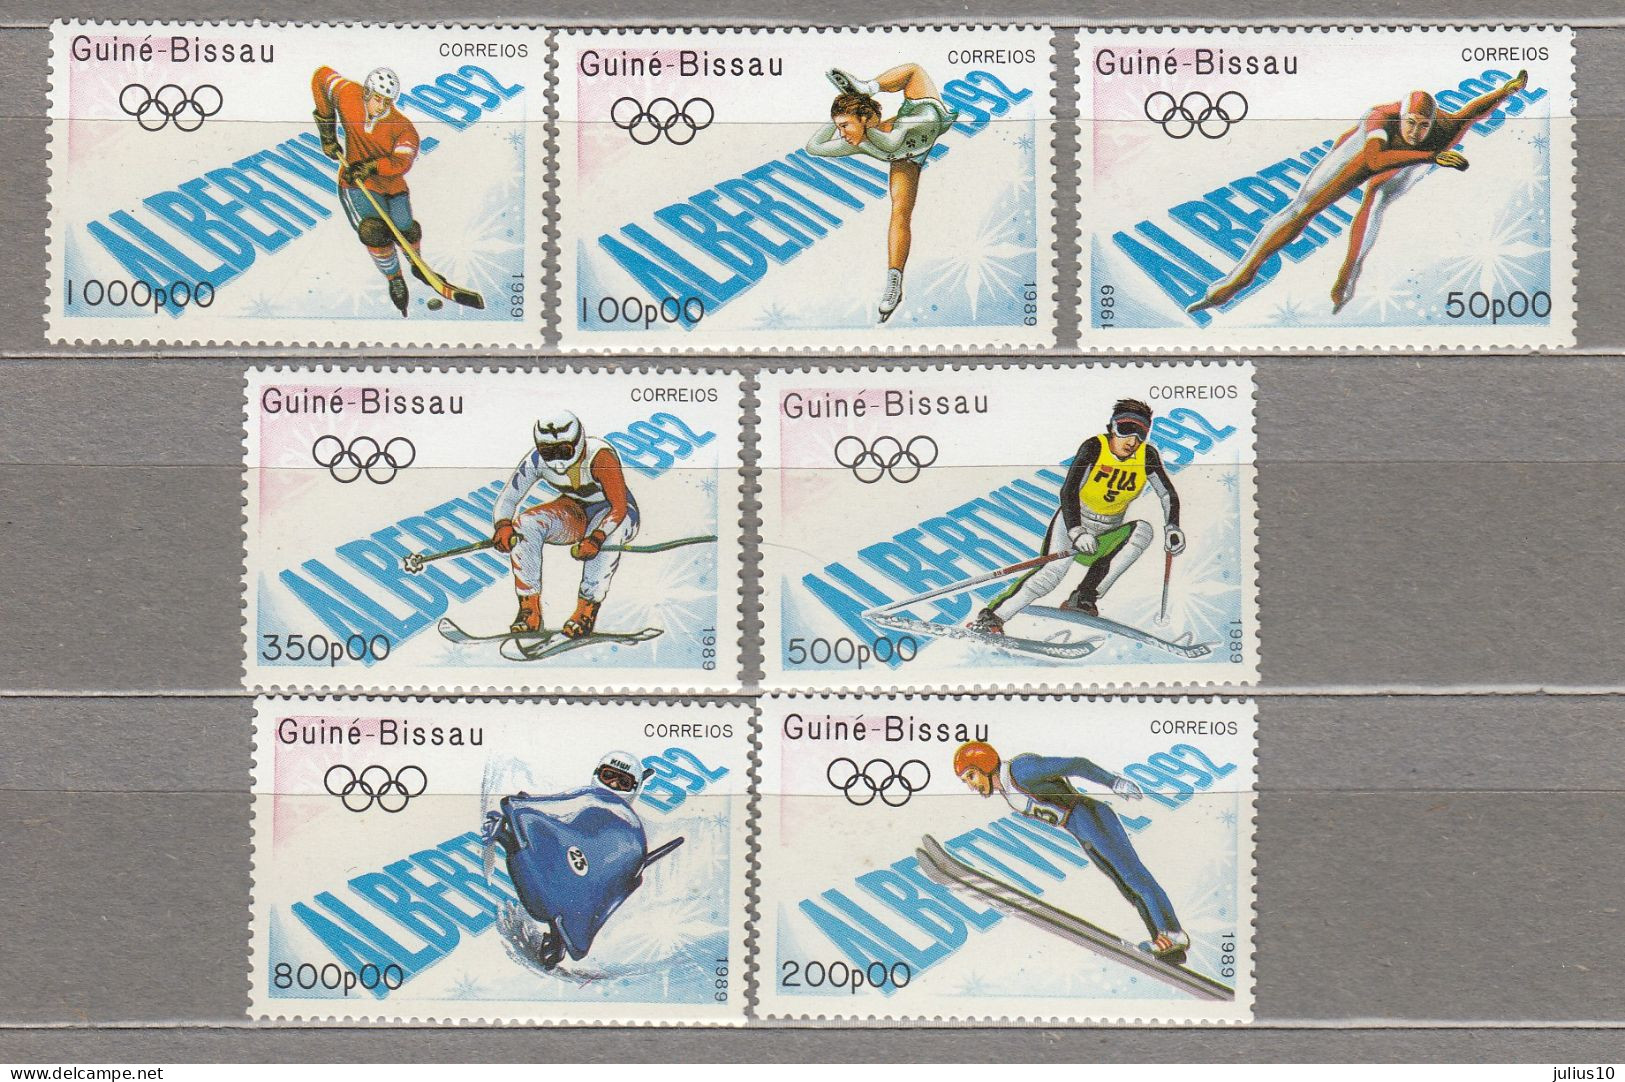 Guinea Bissau 1989 Winter Olympic Games Albertville MNH(**) Mi 1088-1094 #Sport140 - Hiver 1992: Albertville